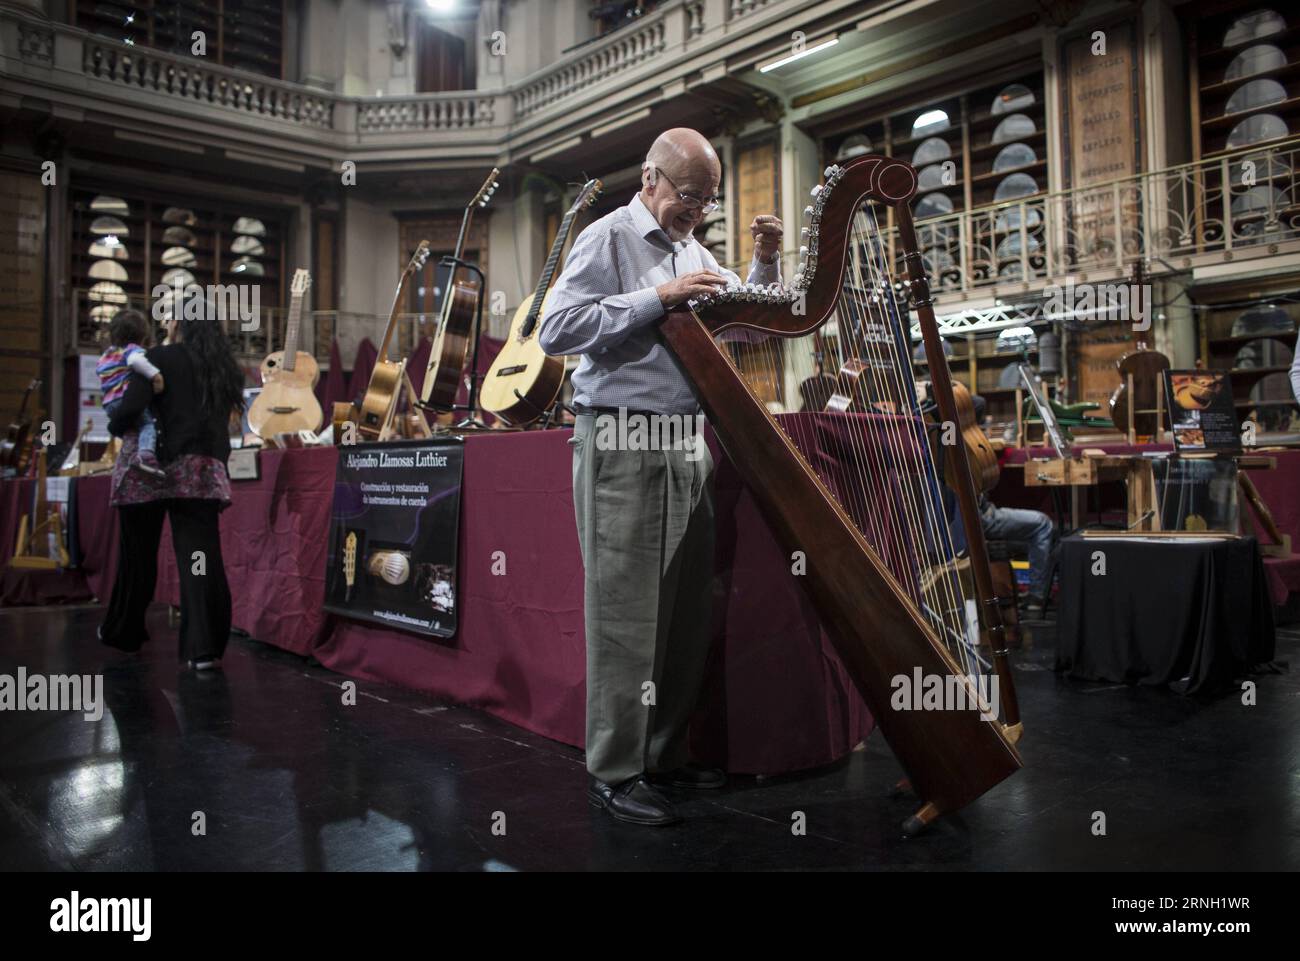 Der Geigenbauer Milan Cardozo legt auf einer seiner Harfen Streicher an, während der Ausstellung Luthiers in Buenos Aires 2016 in Buenos Aires, der Hauptstadt Argentiniens, am 21. Oktober 2016.) (Da)(yy) ARGENTINA-BUENOS AIRES-SOCIETY-EXPOSITION MARTINxZABALA PUBLICATIONxNOTxINxCHN Geigenbauer Milan Cardozo legt auf einer seiner Harfen während des Exposure Geigenspiels in Buenos Aires 2016 in Buenos Aires City Capital of Argentina AM 21. Oktober 2016 dort y Argentina Buenos Aires Society Exposure MartinXZabala PUBLICxCHNxN Stockfoto